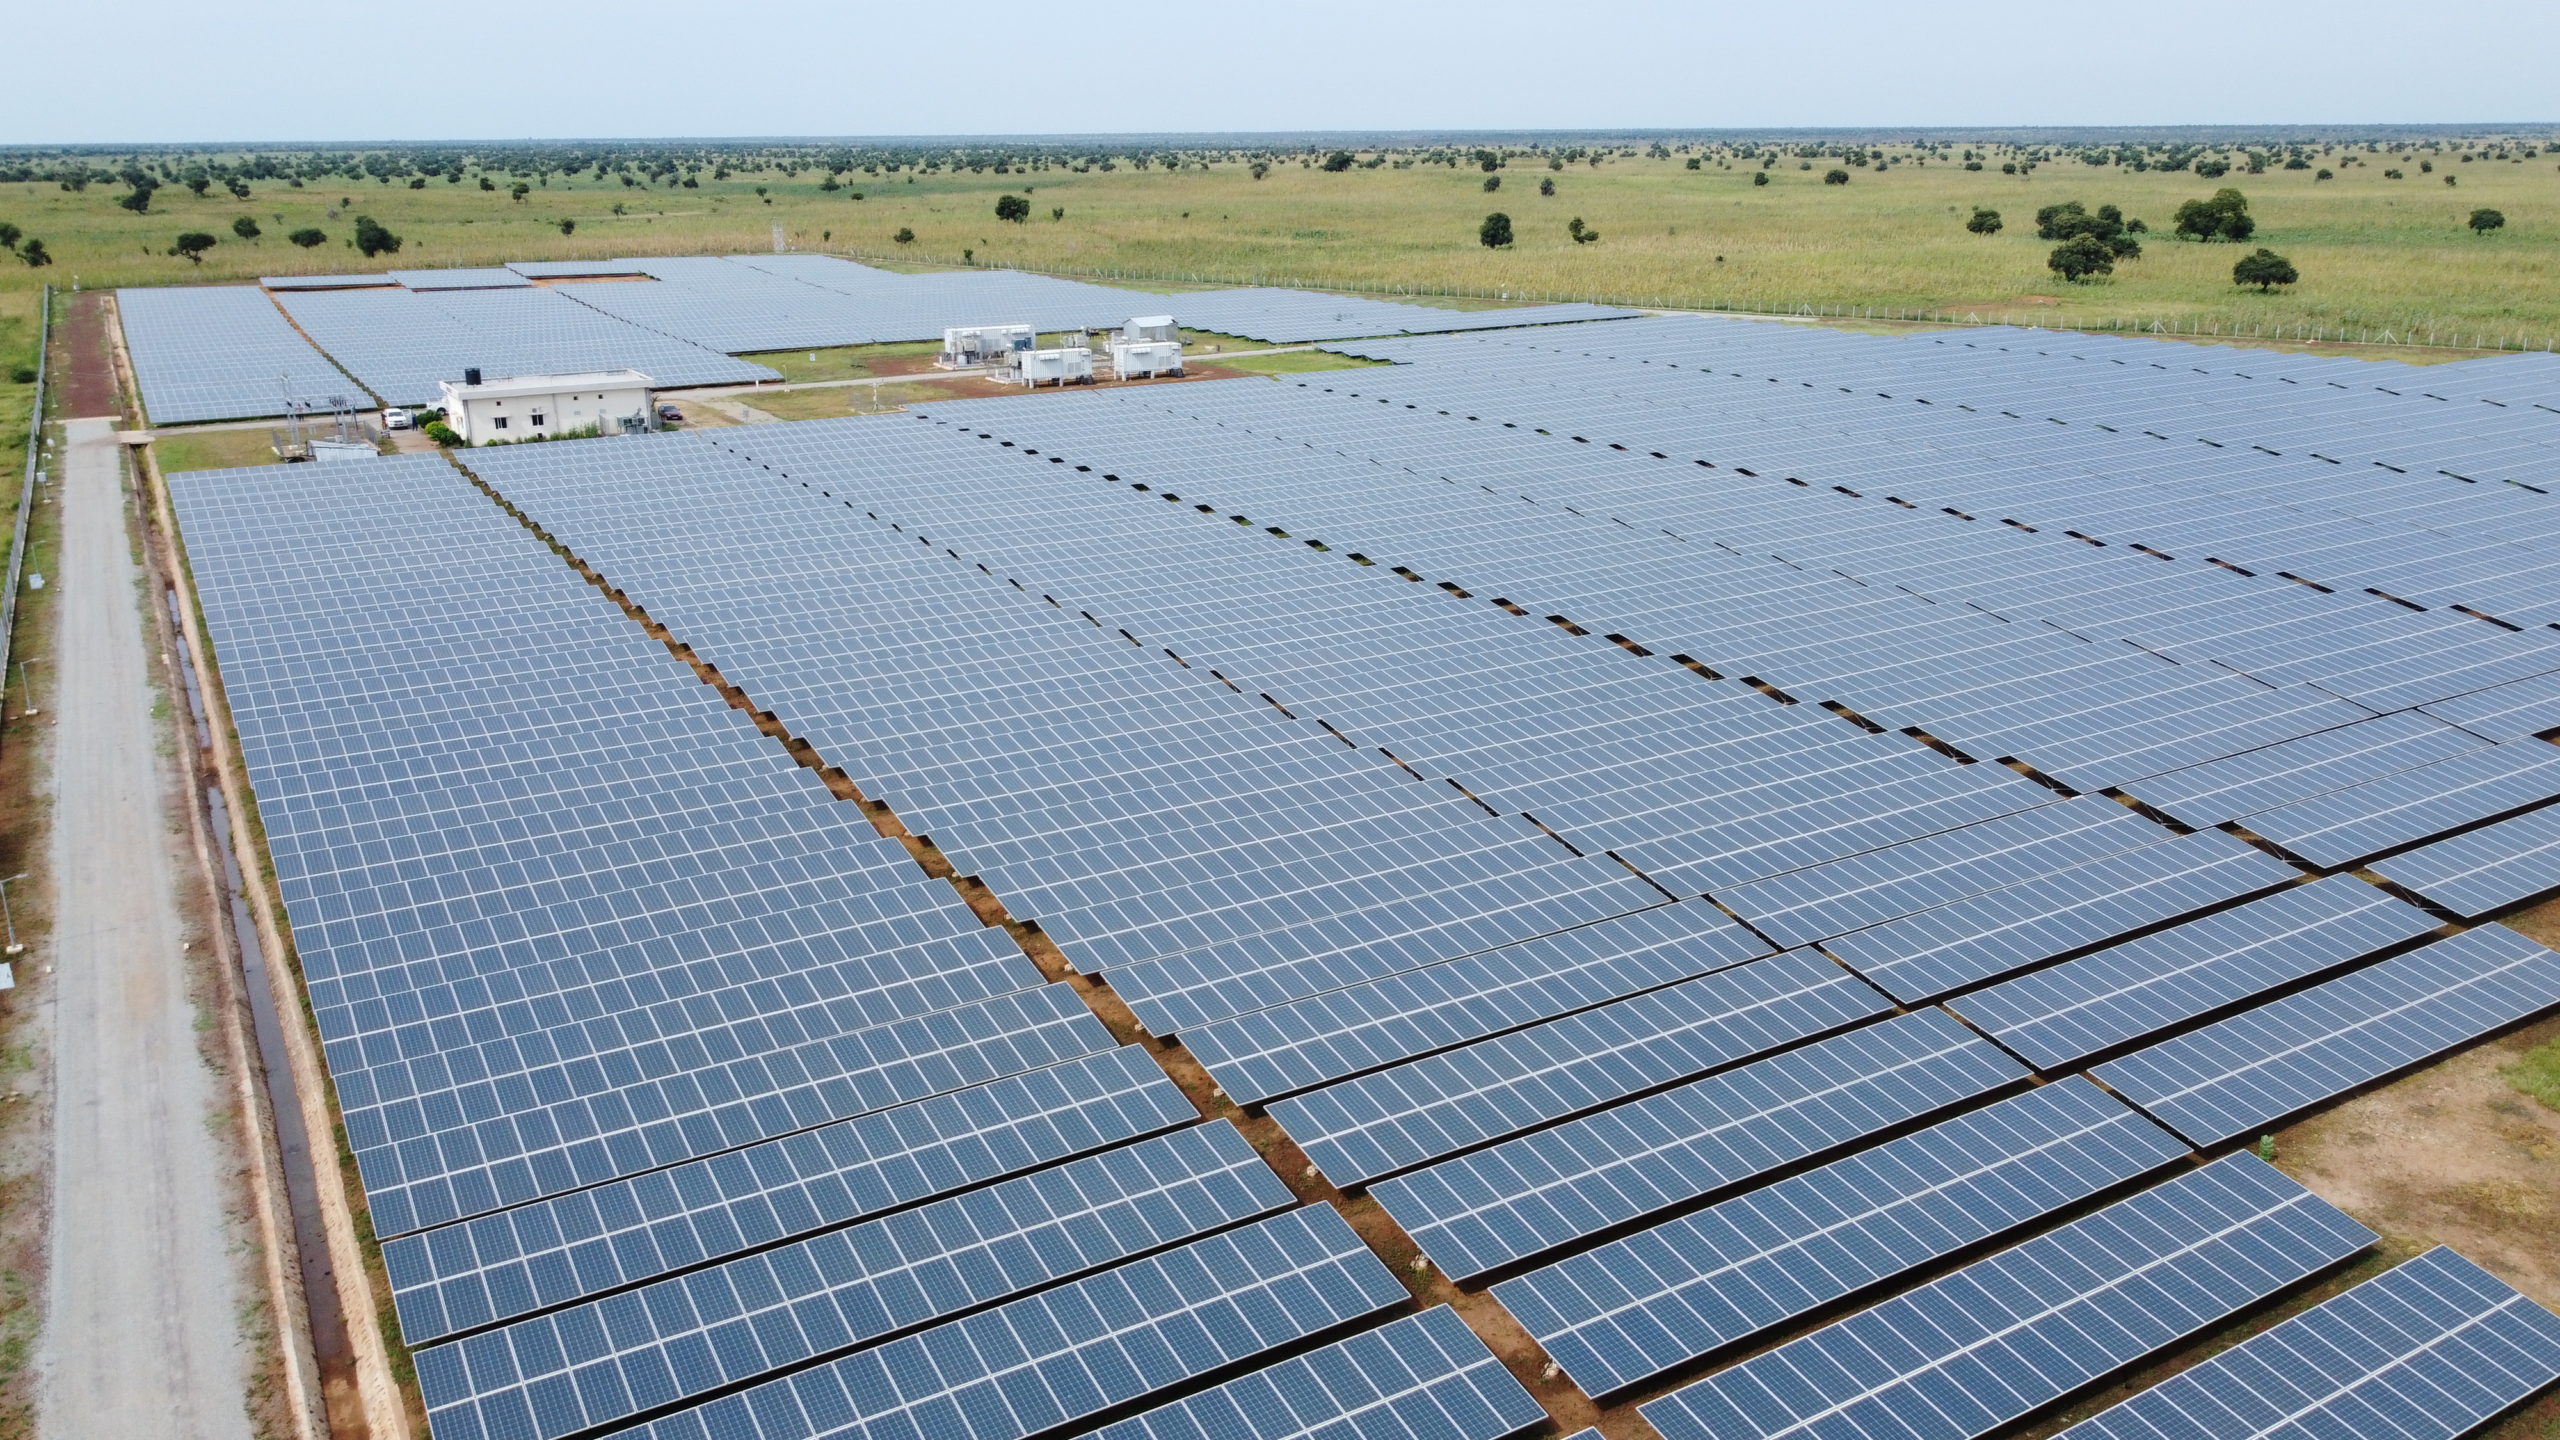 Vue d'ensemble du champs de panneaux solaires de la Centrale PV 7 MWc de Malbaza